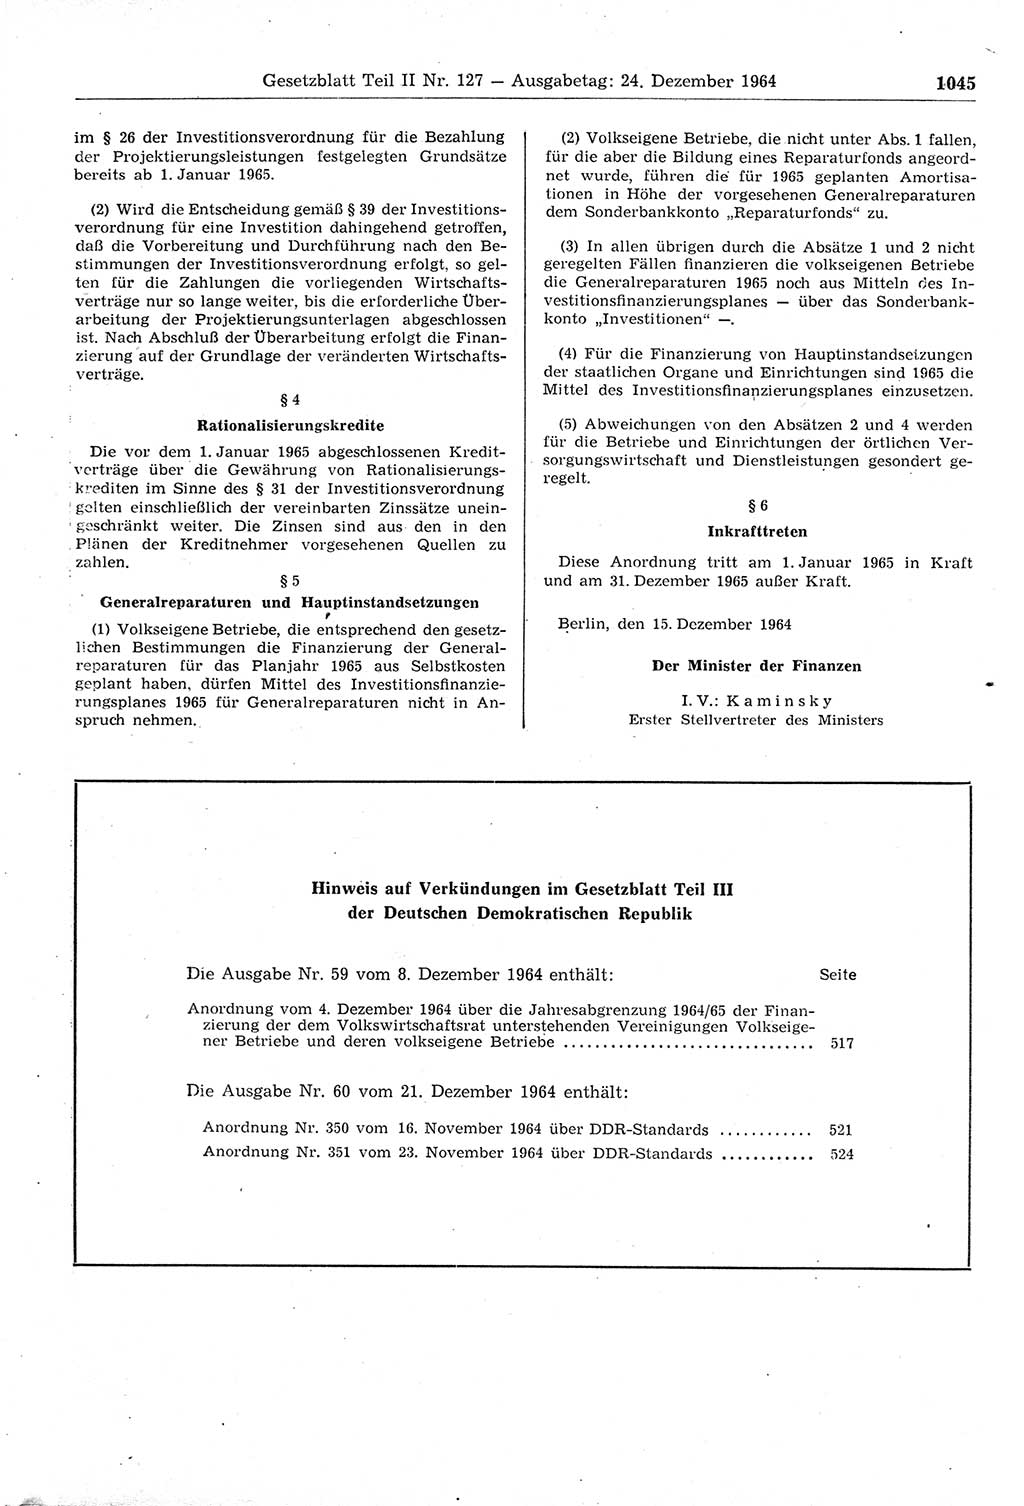 Gesetzblatt (GBl.) der Deutschen Demokratischen Republik (DDR) Teil ⅠⅠ 1964, Seite 1045 (GBl. DDR ⅠⅠ 1964, S. 1045)